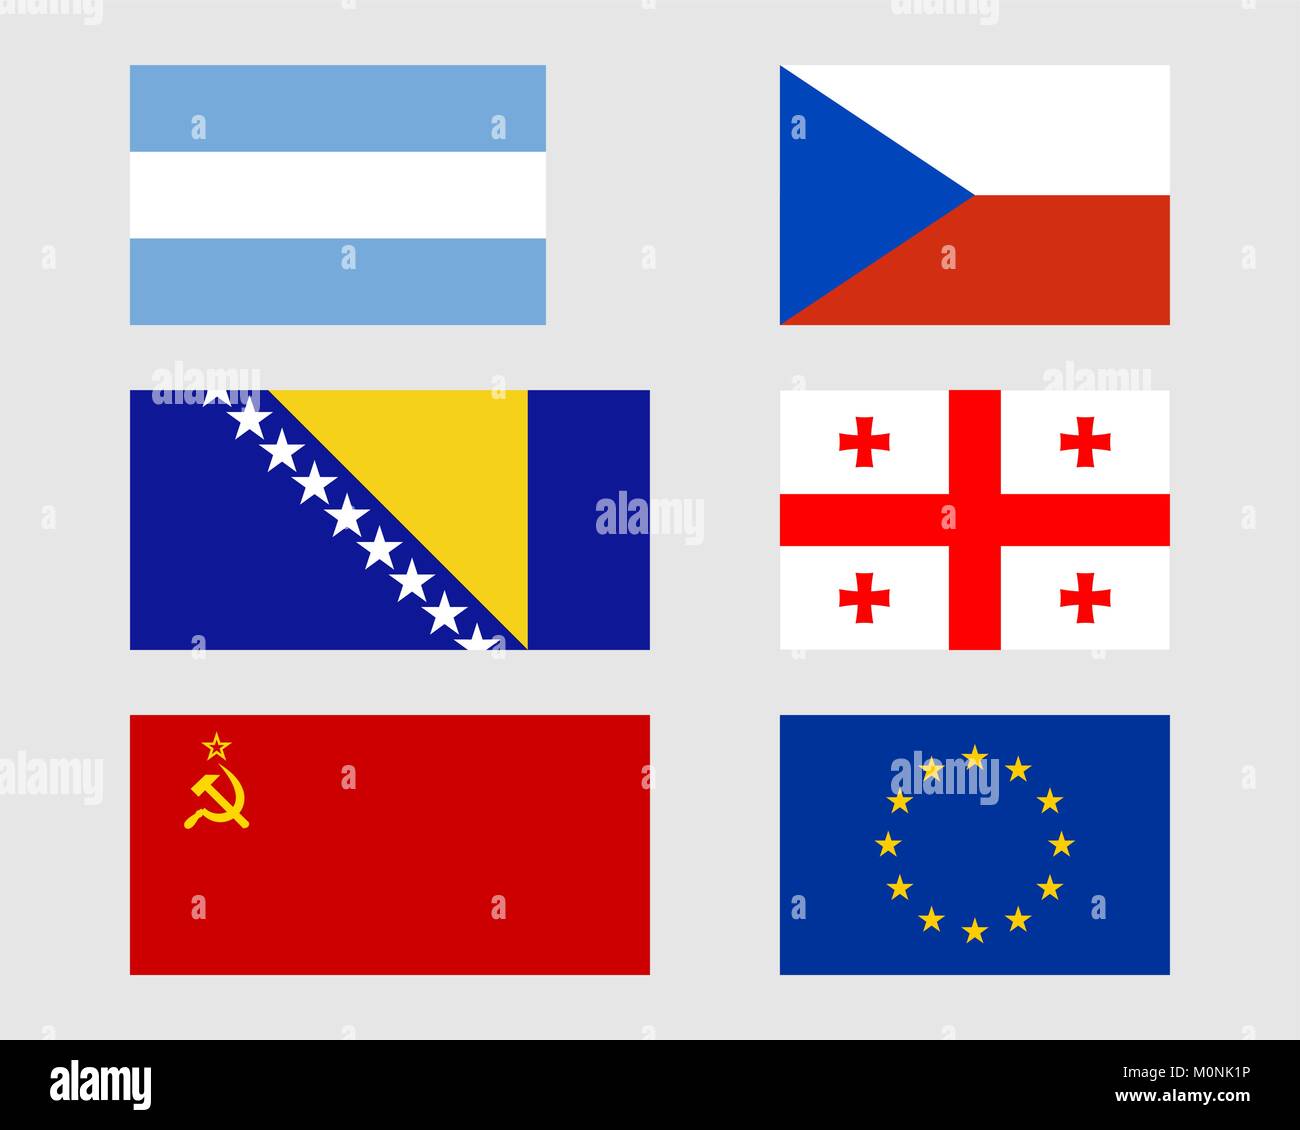 Argentine, République tchèque, bosniaque, géorgien, et Europeari soviétique drapeaux. Illustration de Vecteur